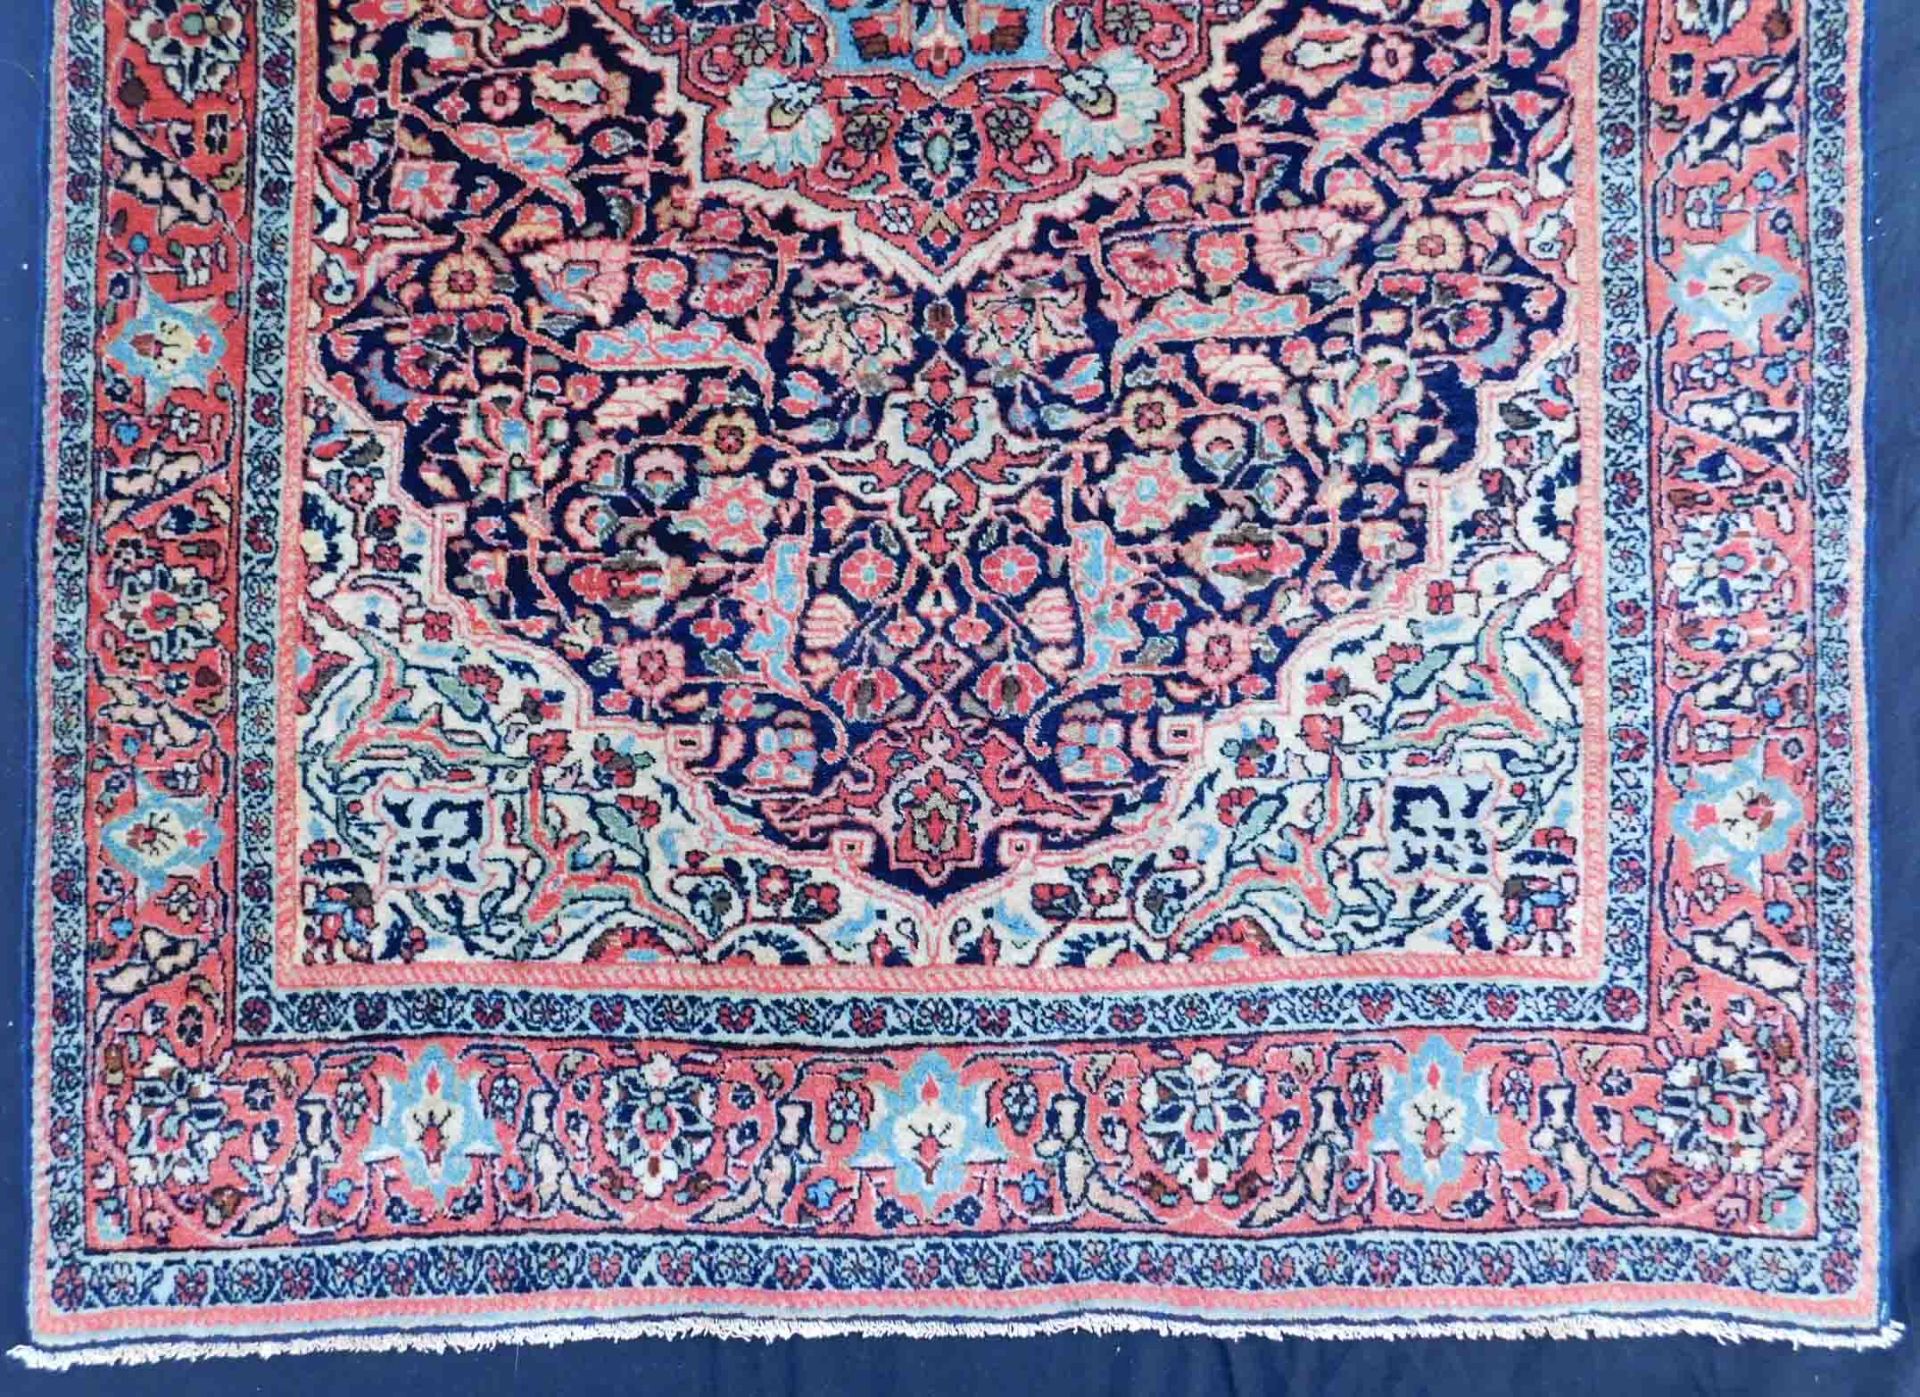 Djosan Persian carpet. Iran, about 90 - 110 years old. - Image 2 of 6